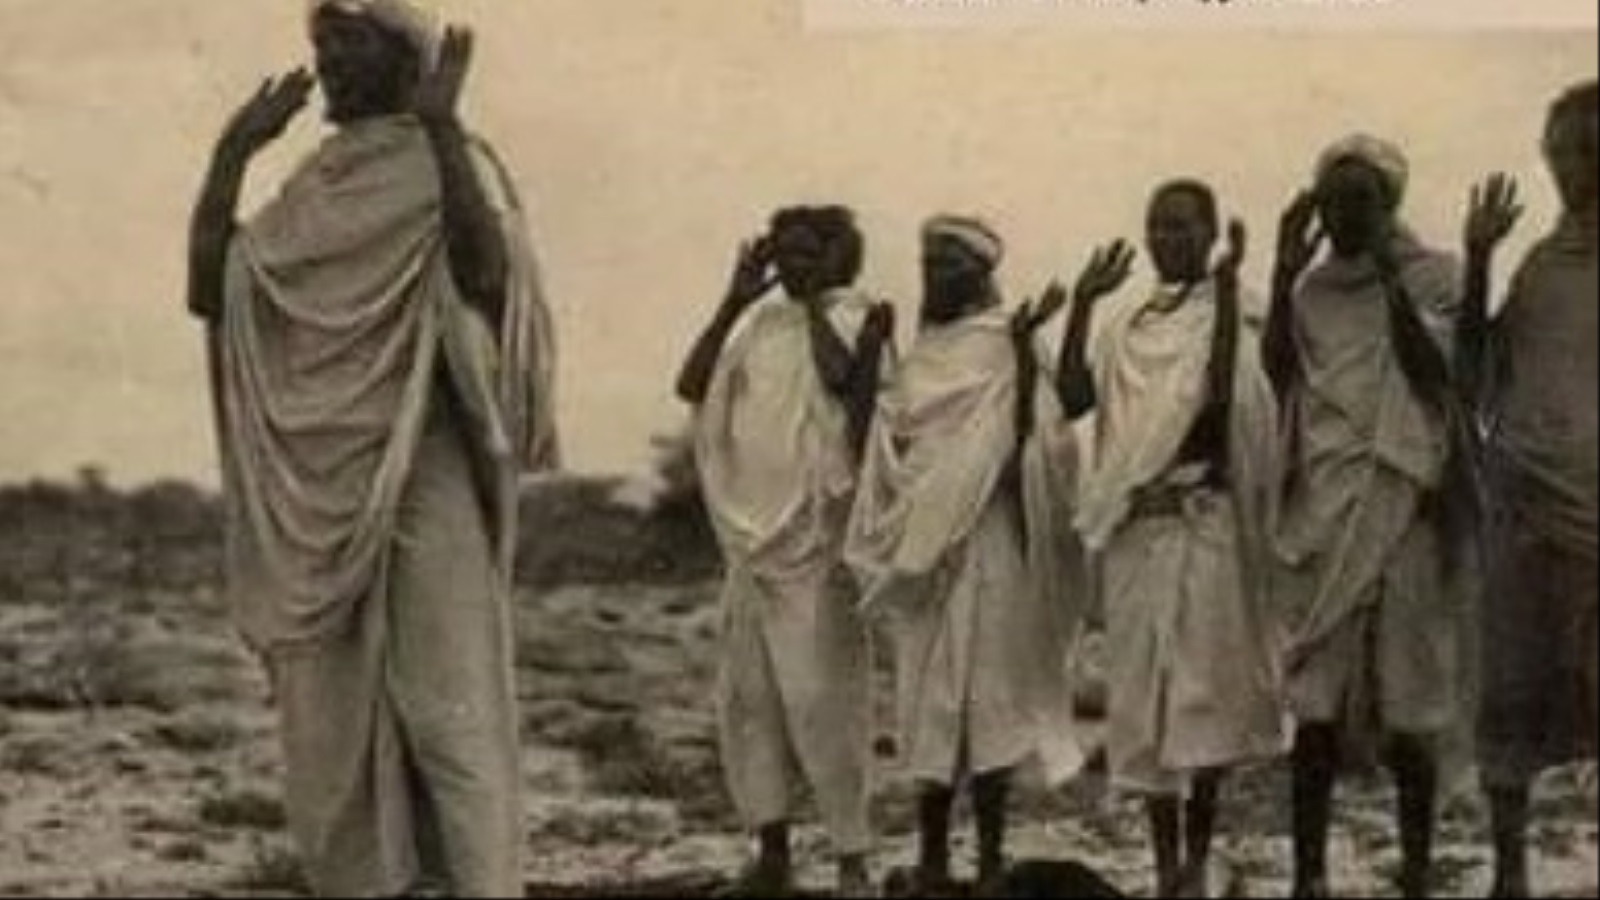 كان الصوماليون يتمددون على المشرق الأفريقي من أجل نشر الإسلام، أو الهرب عن صراع القبائل، أو البحث عن الثراء ومناطق لم يصلها الرعاة الرحل